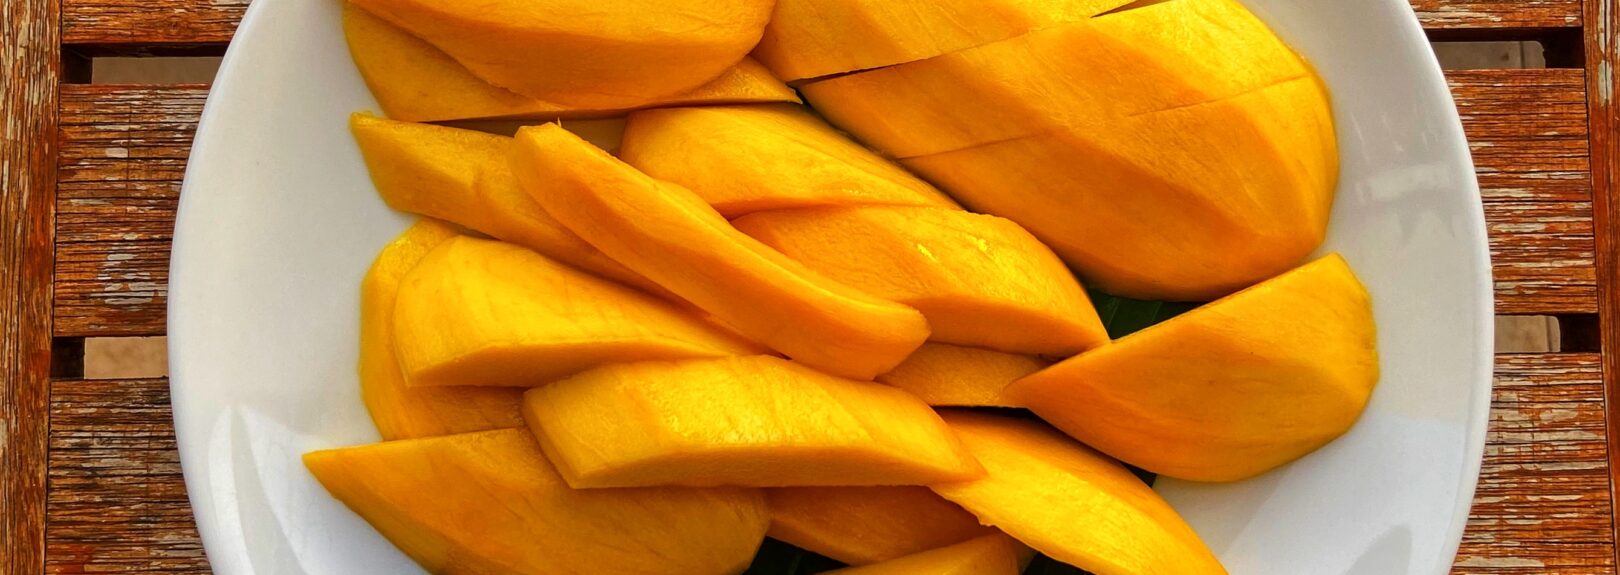 ovocie mango, mango recepty. Mango nakrájané na väčšie kusy na bielom tanieri